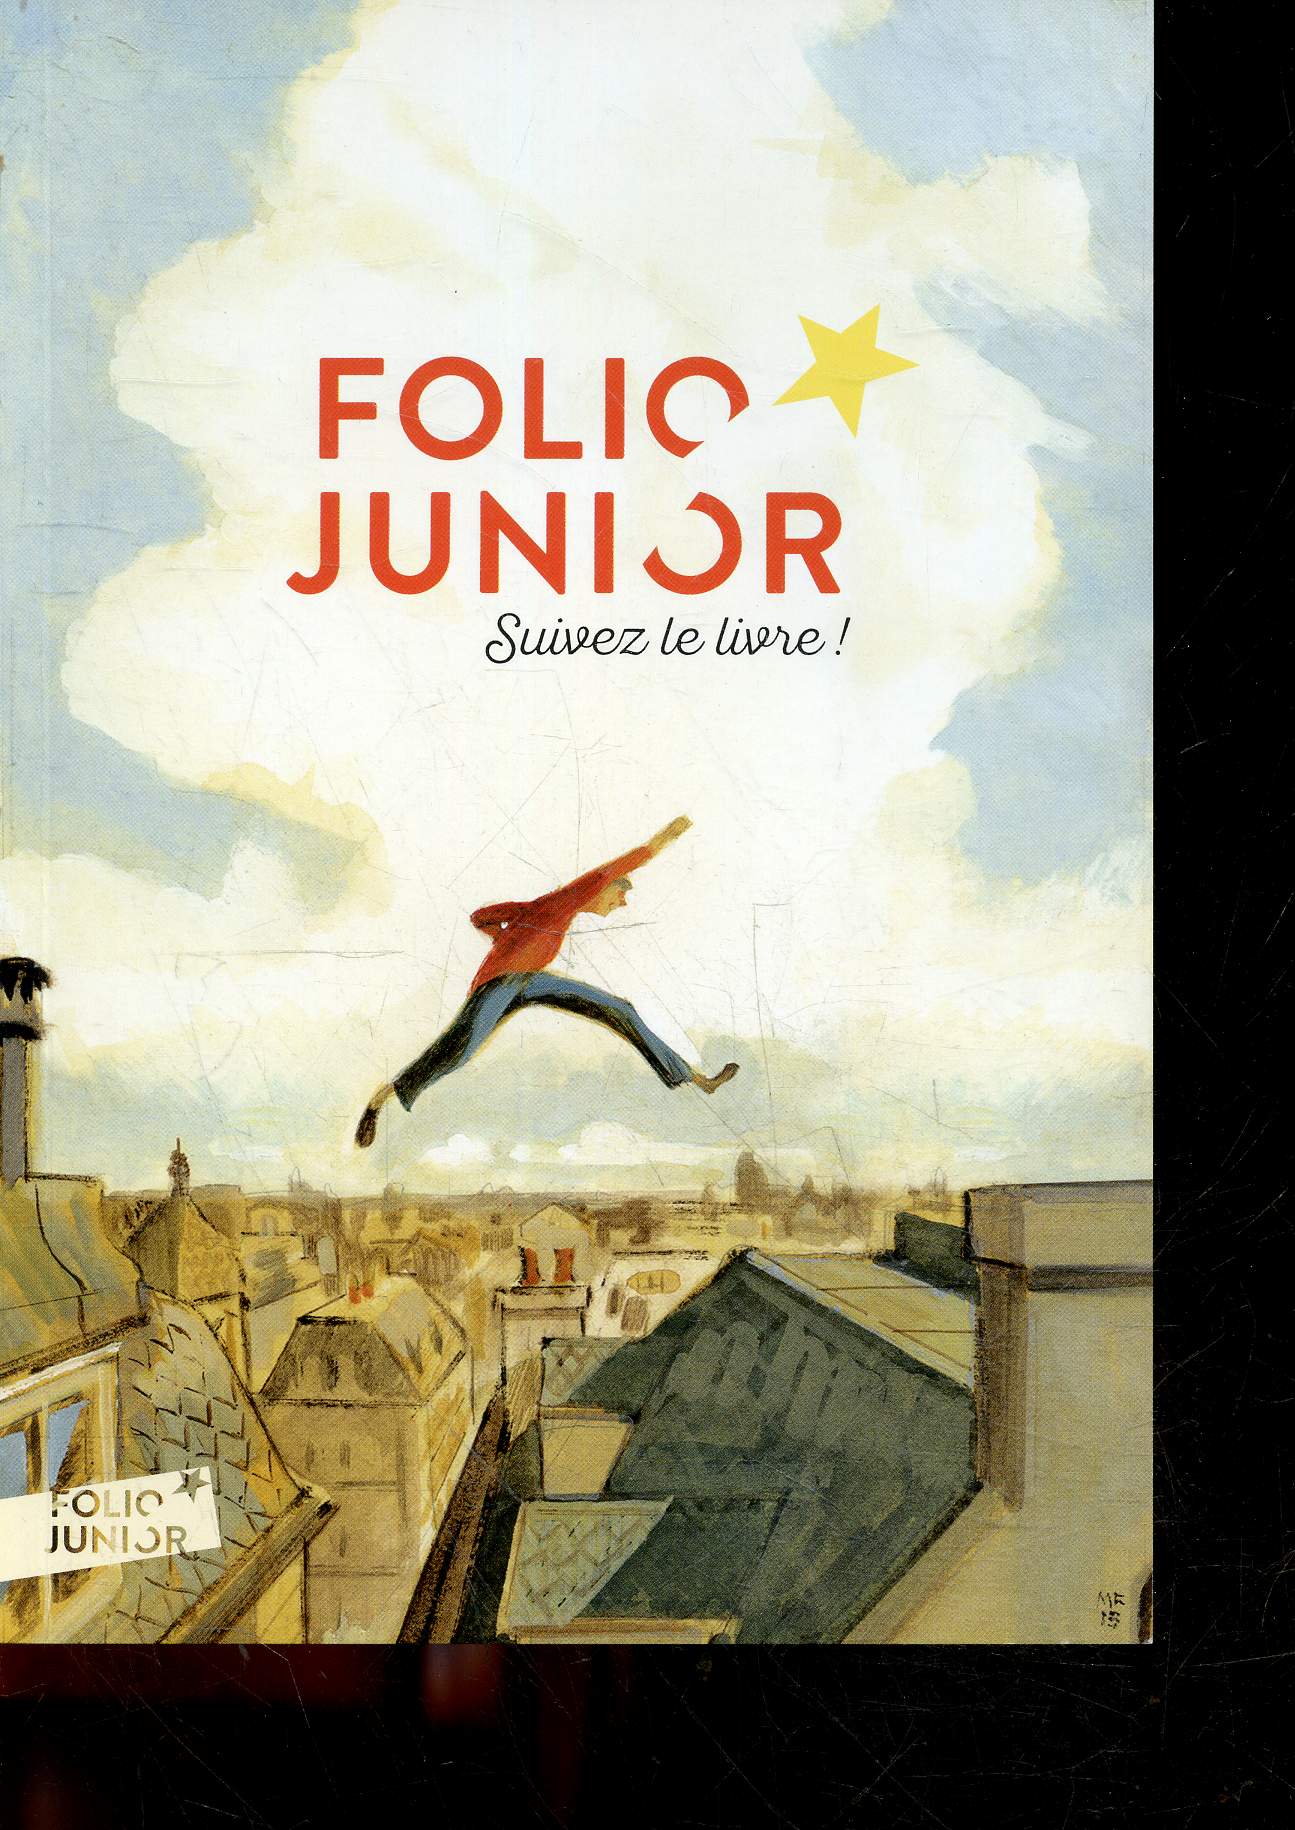 FOLIO JUNIOR SUIVEZ LE LIVRE ! - catalogue folio junior